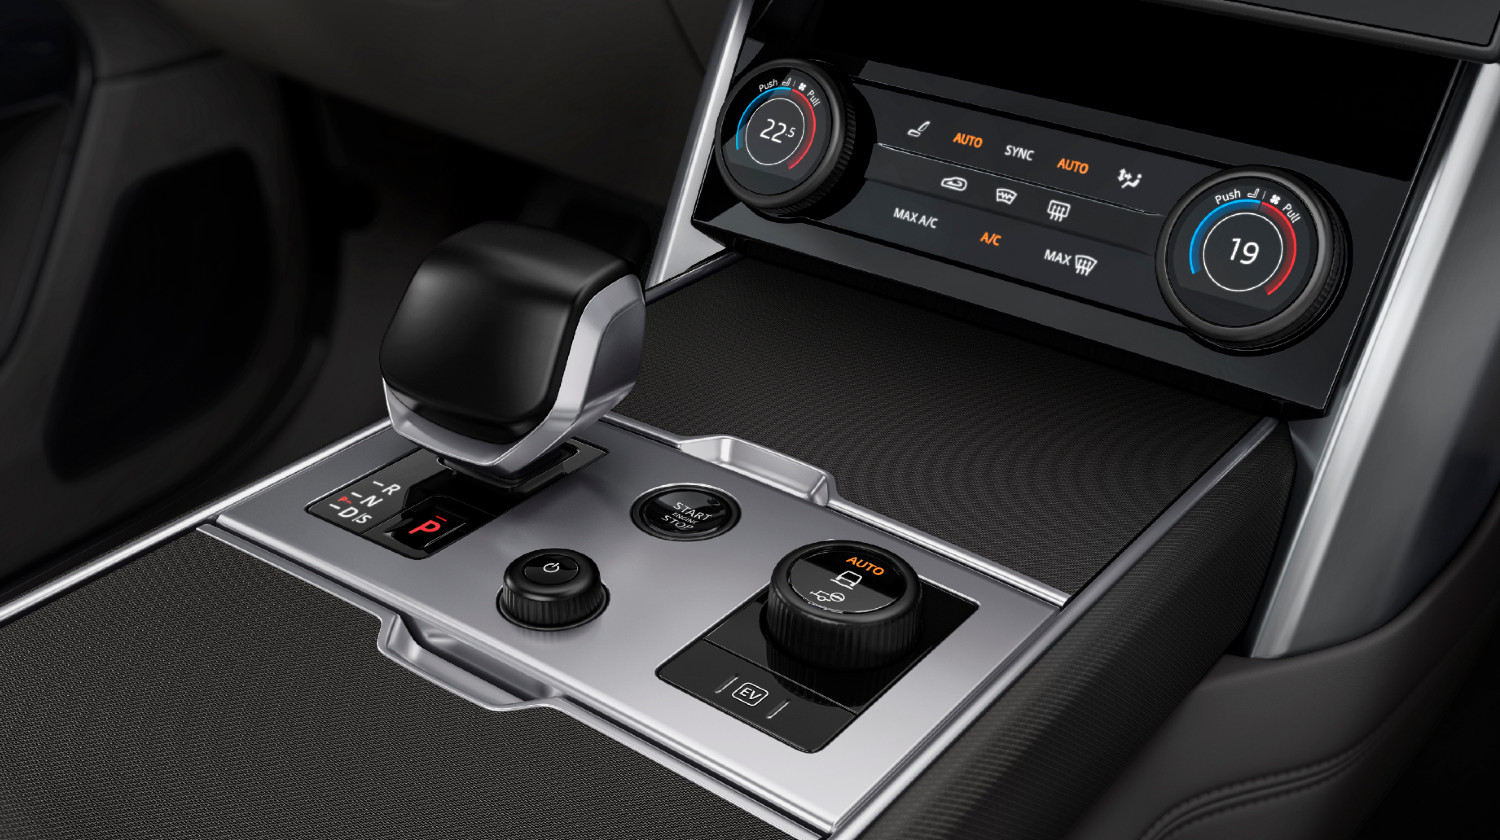 A tecnologia de ponta, nomeadamente, no apoio à condução, é uma garantia no novo Range Rover